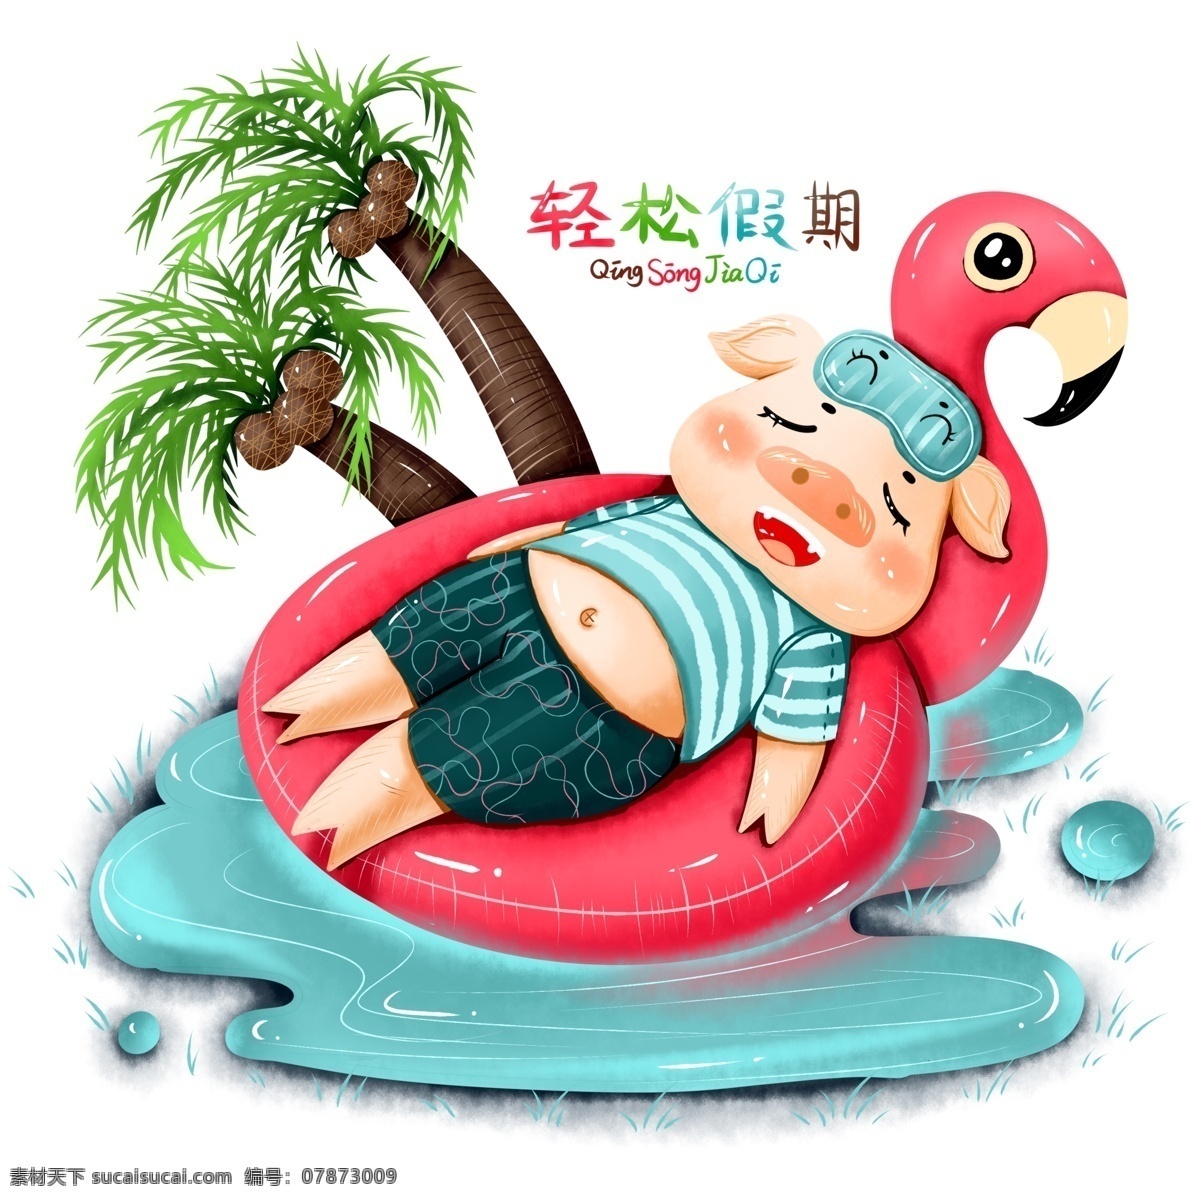 原创 手绘 2019 愿望 假期 猪年 度假 新年 泳 圈 猪 元素 海报素材 商用 猪猪 猪元素 猪形象 泳圈